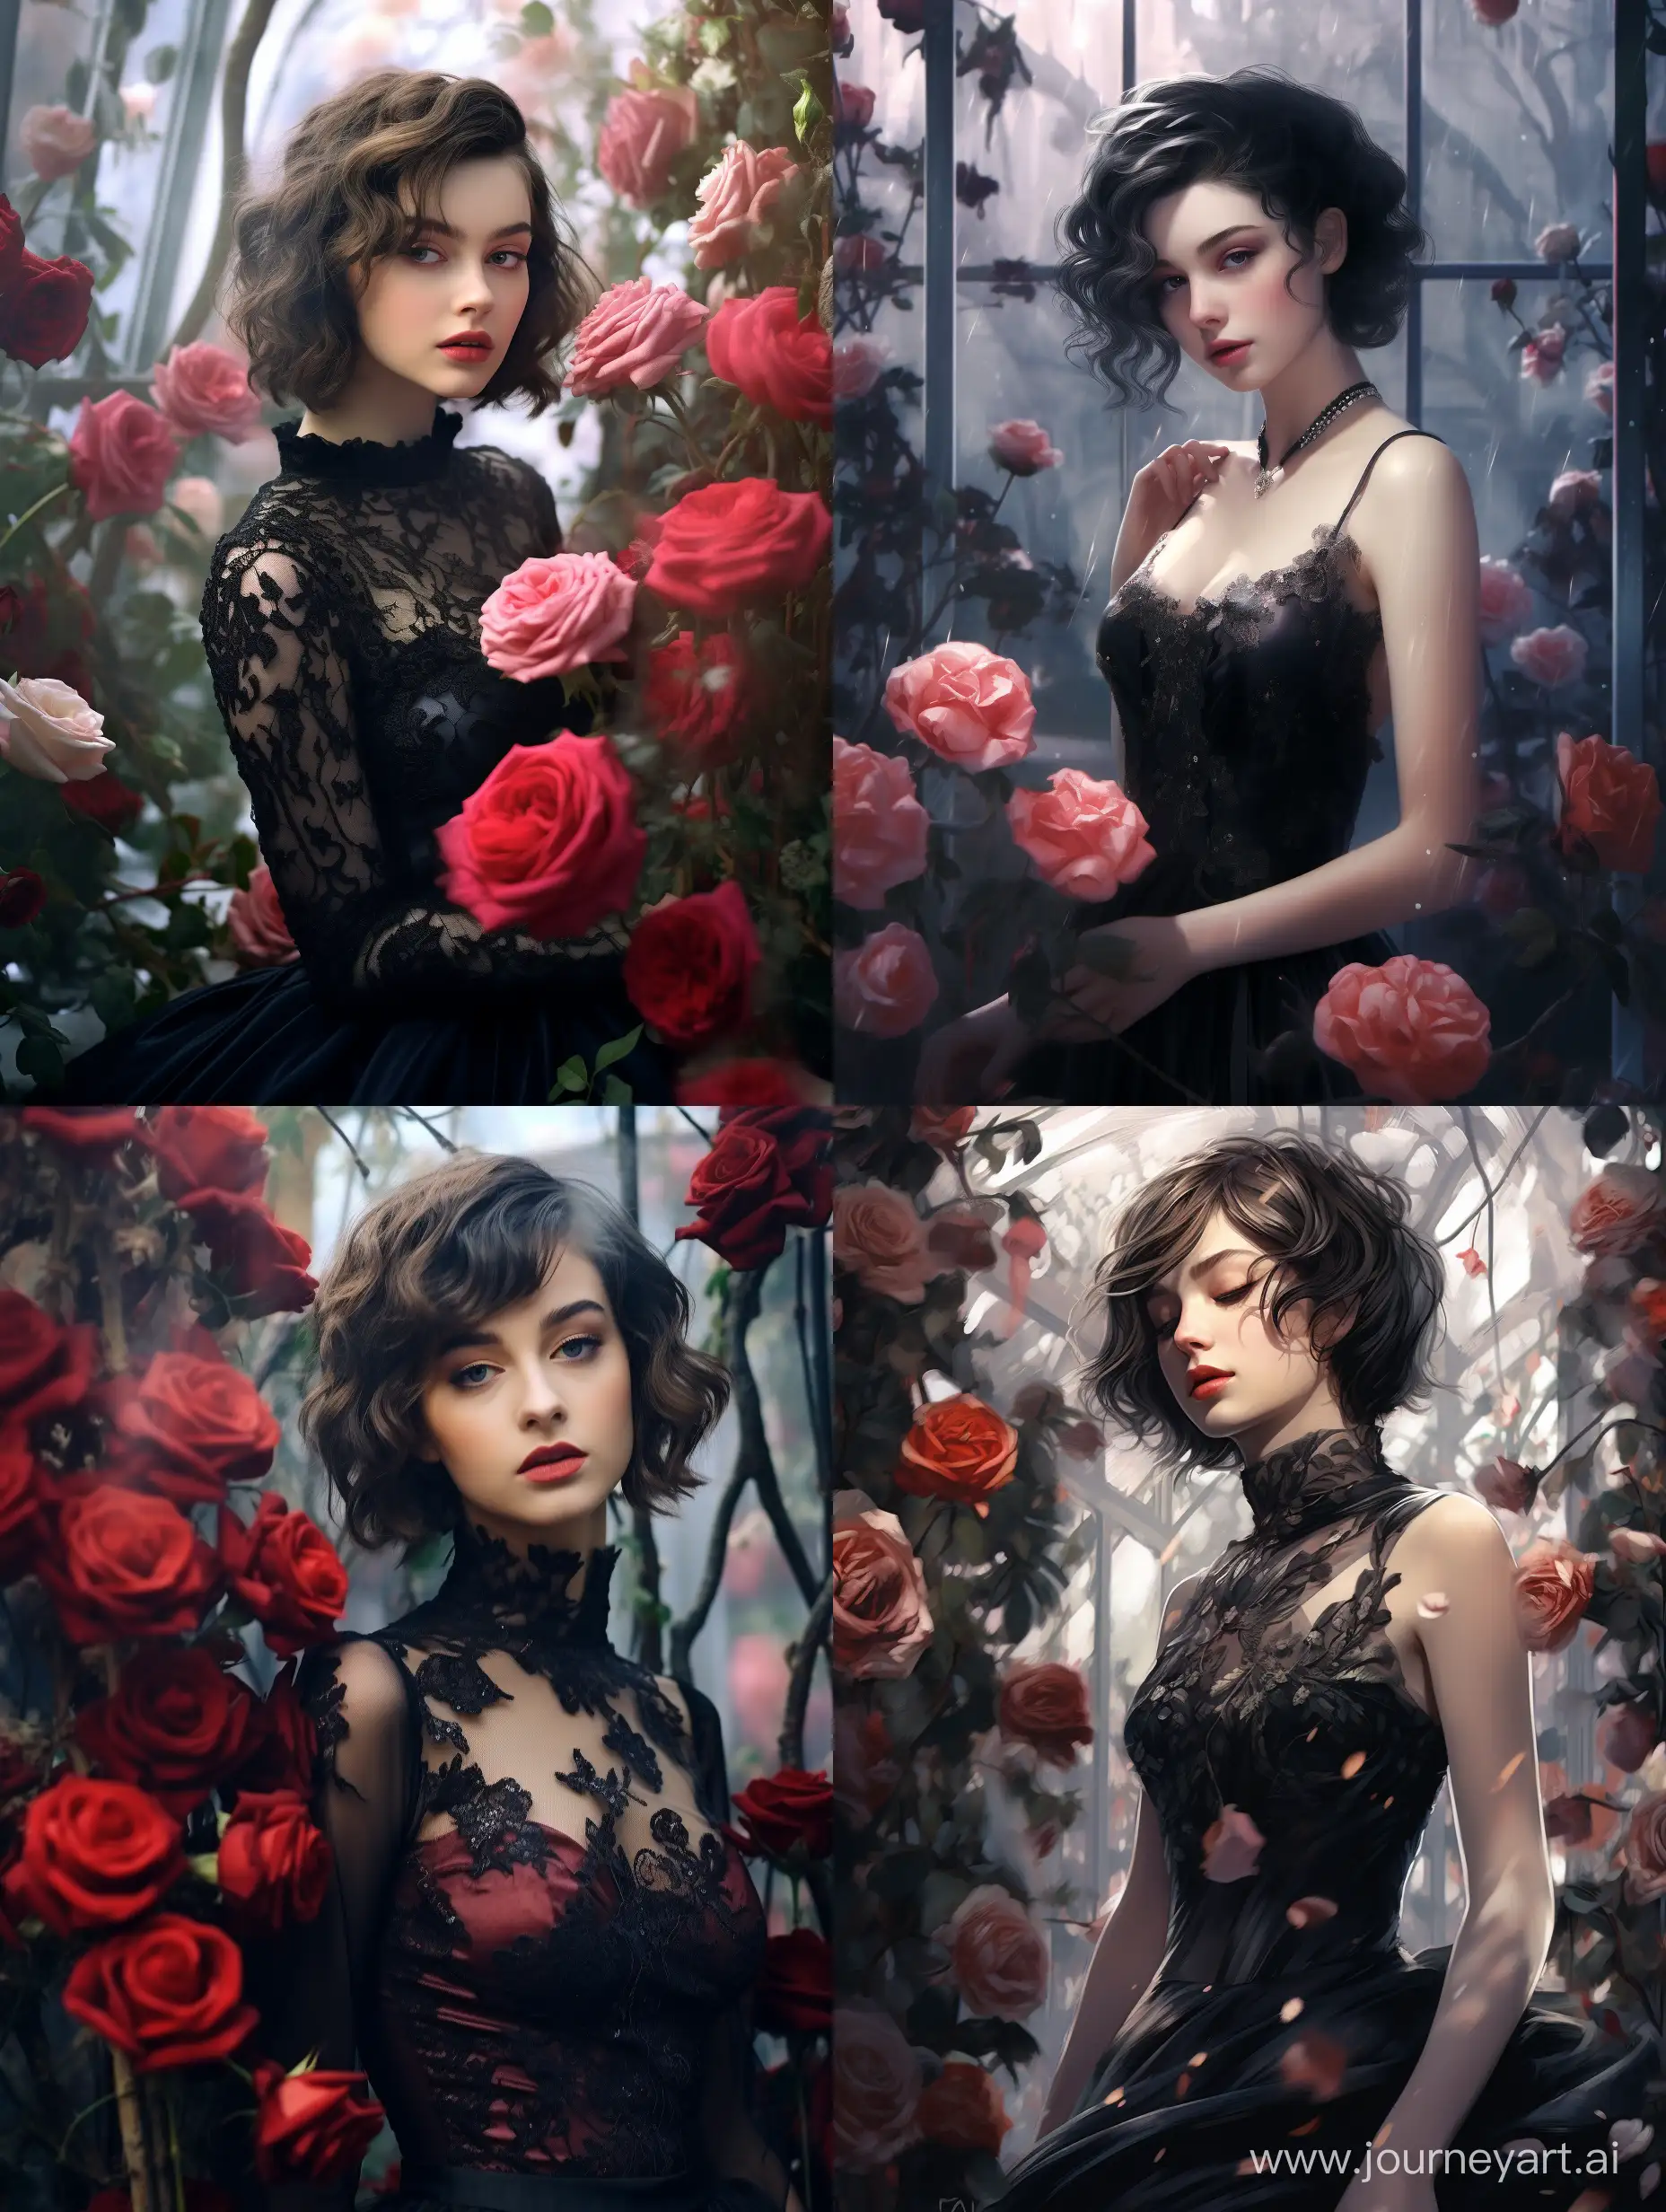 Девушка с короткой стрижкой, с темными волосами, в красивом платье в зимнем саду с цветущими розами